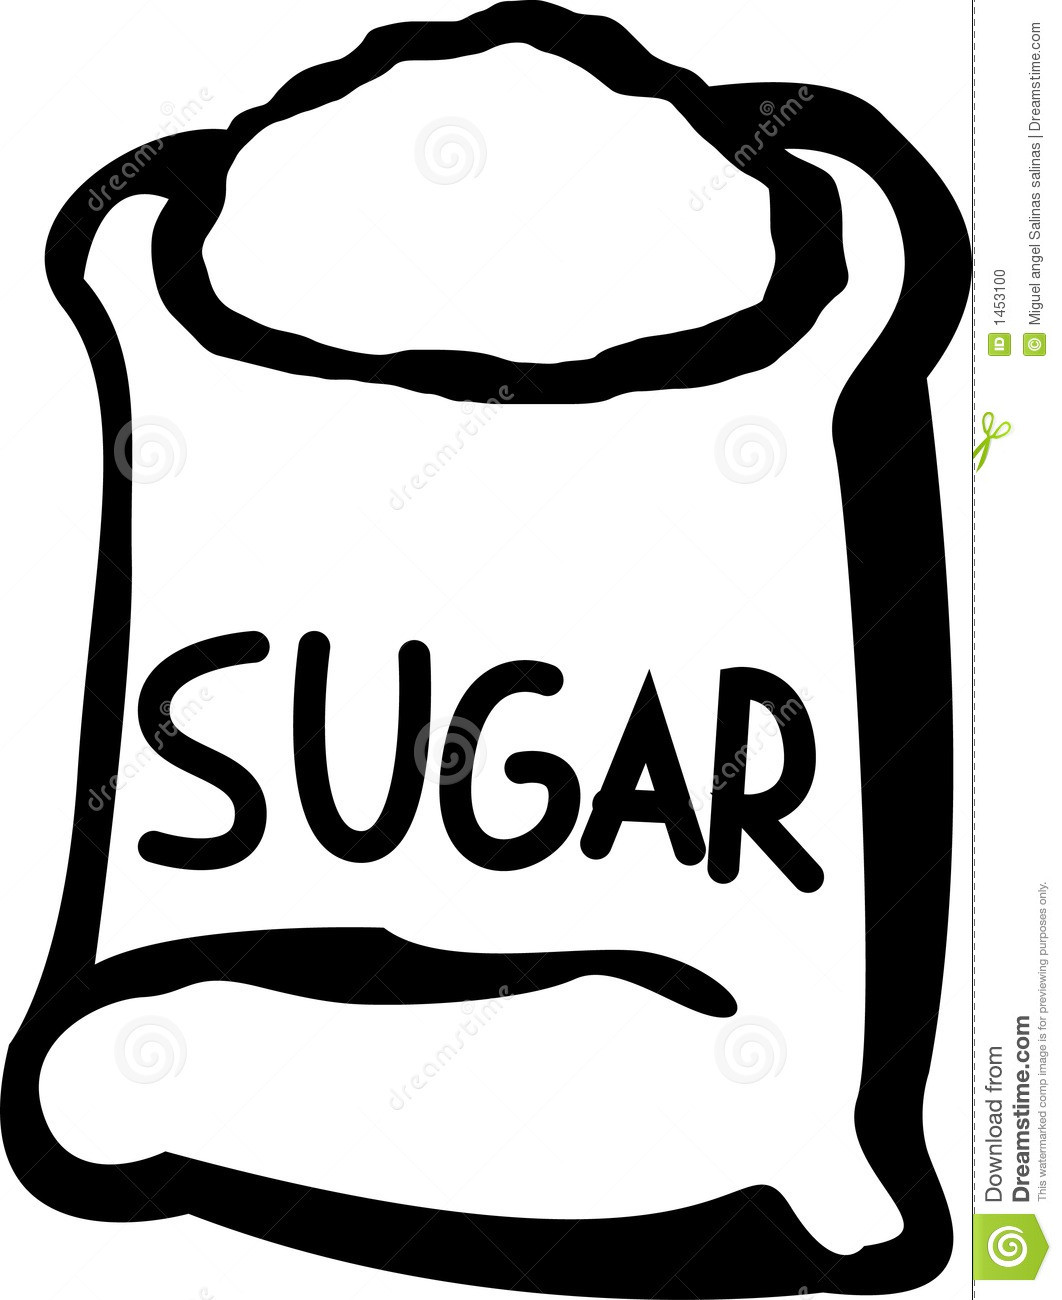 sugar clipart